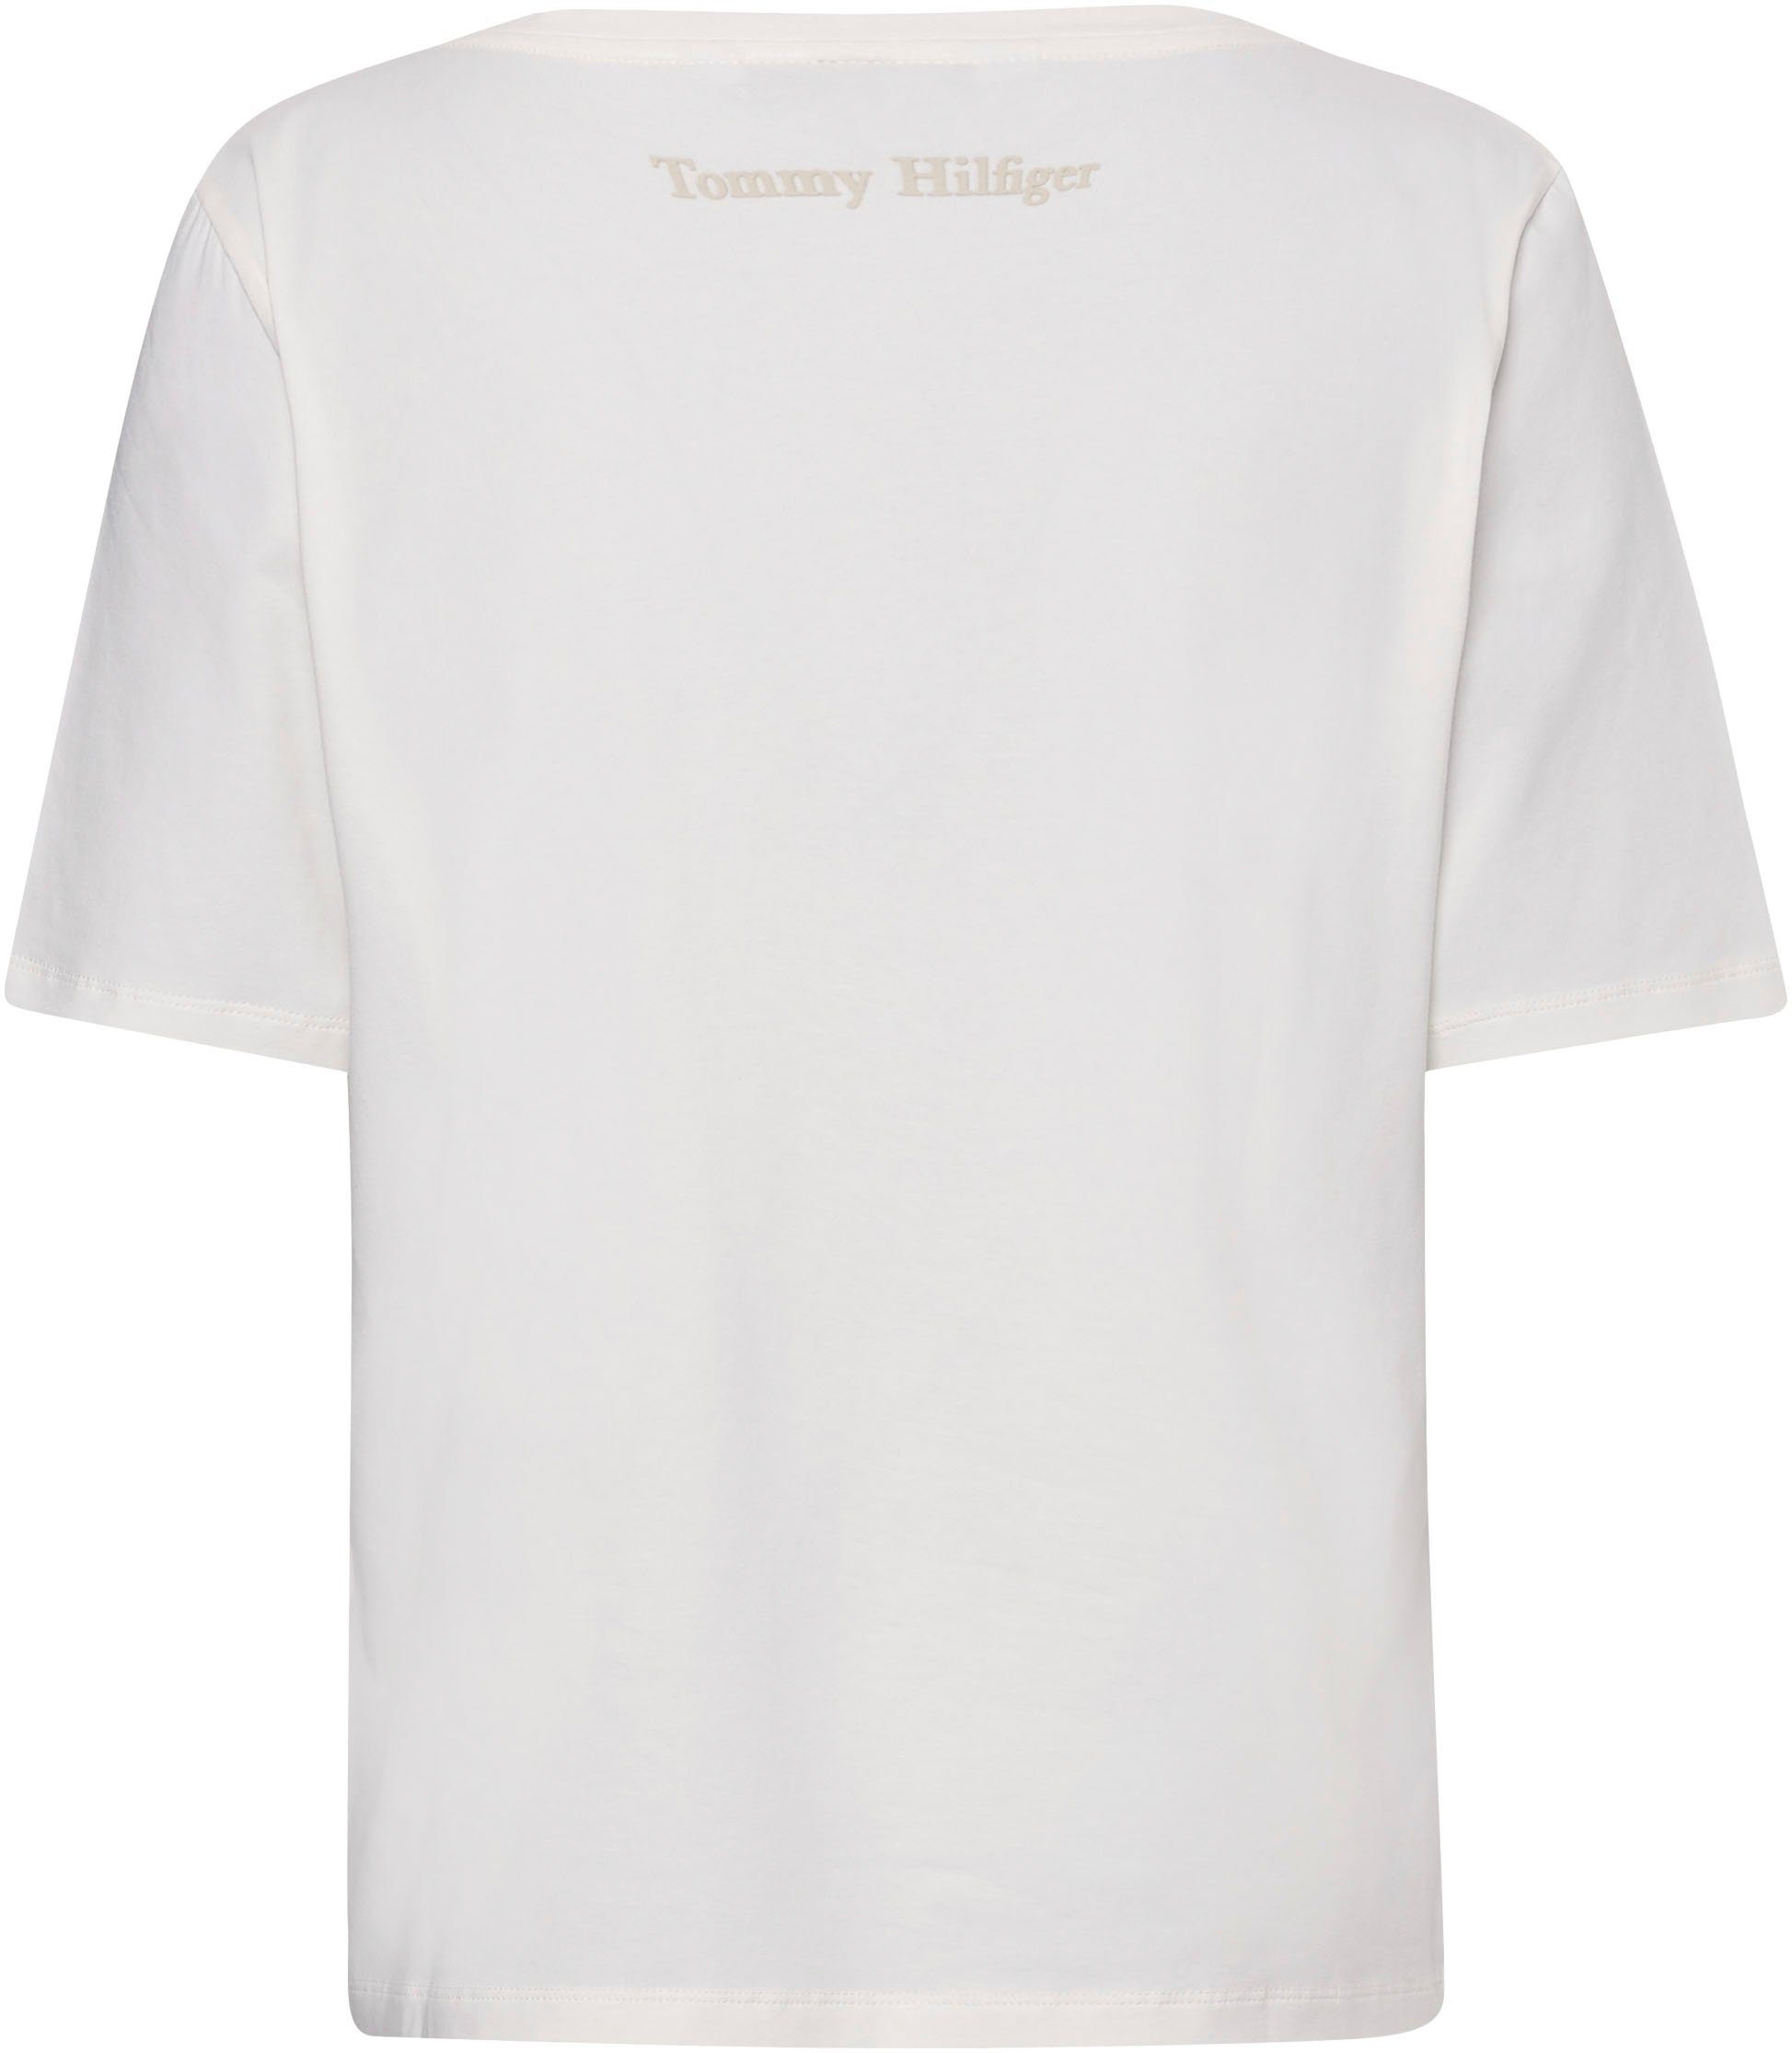 Hilfiger ecru Markenlabel mit Tommy T-Shirt